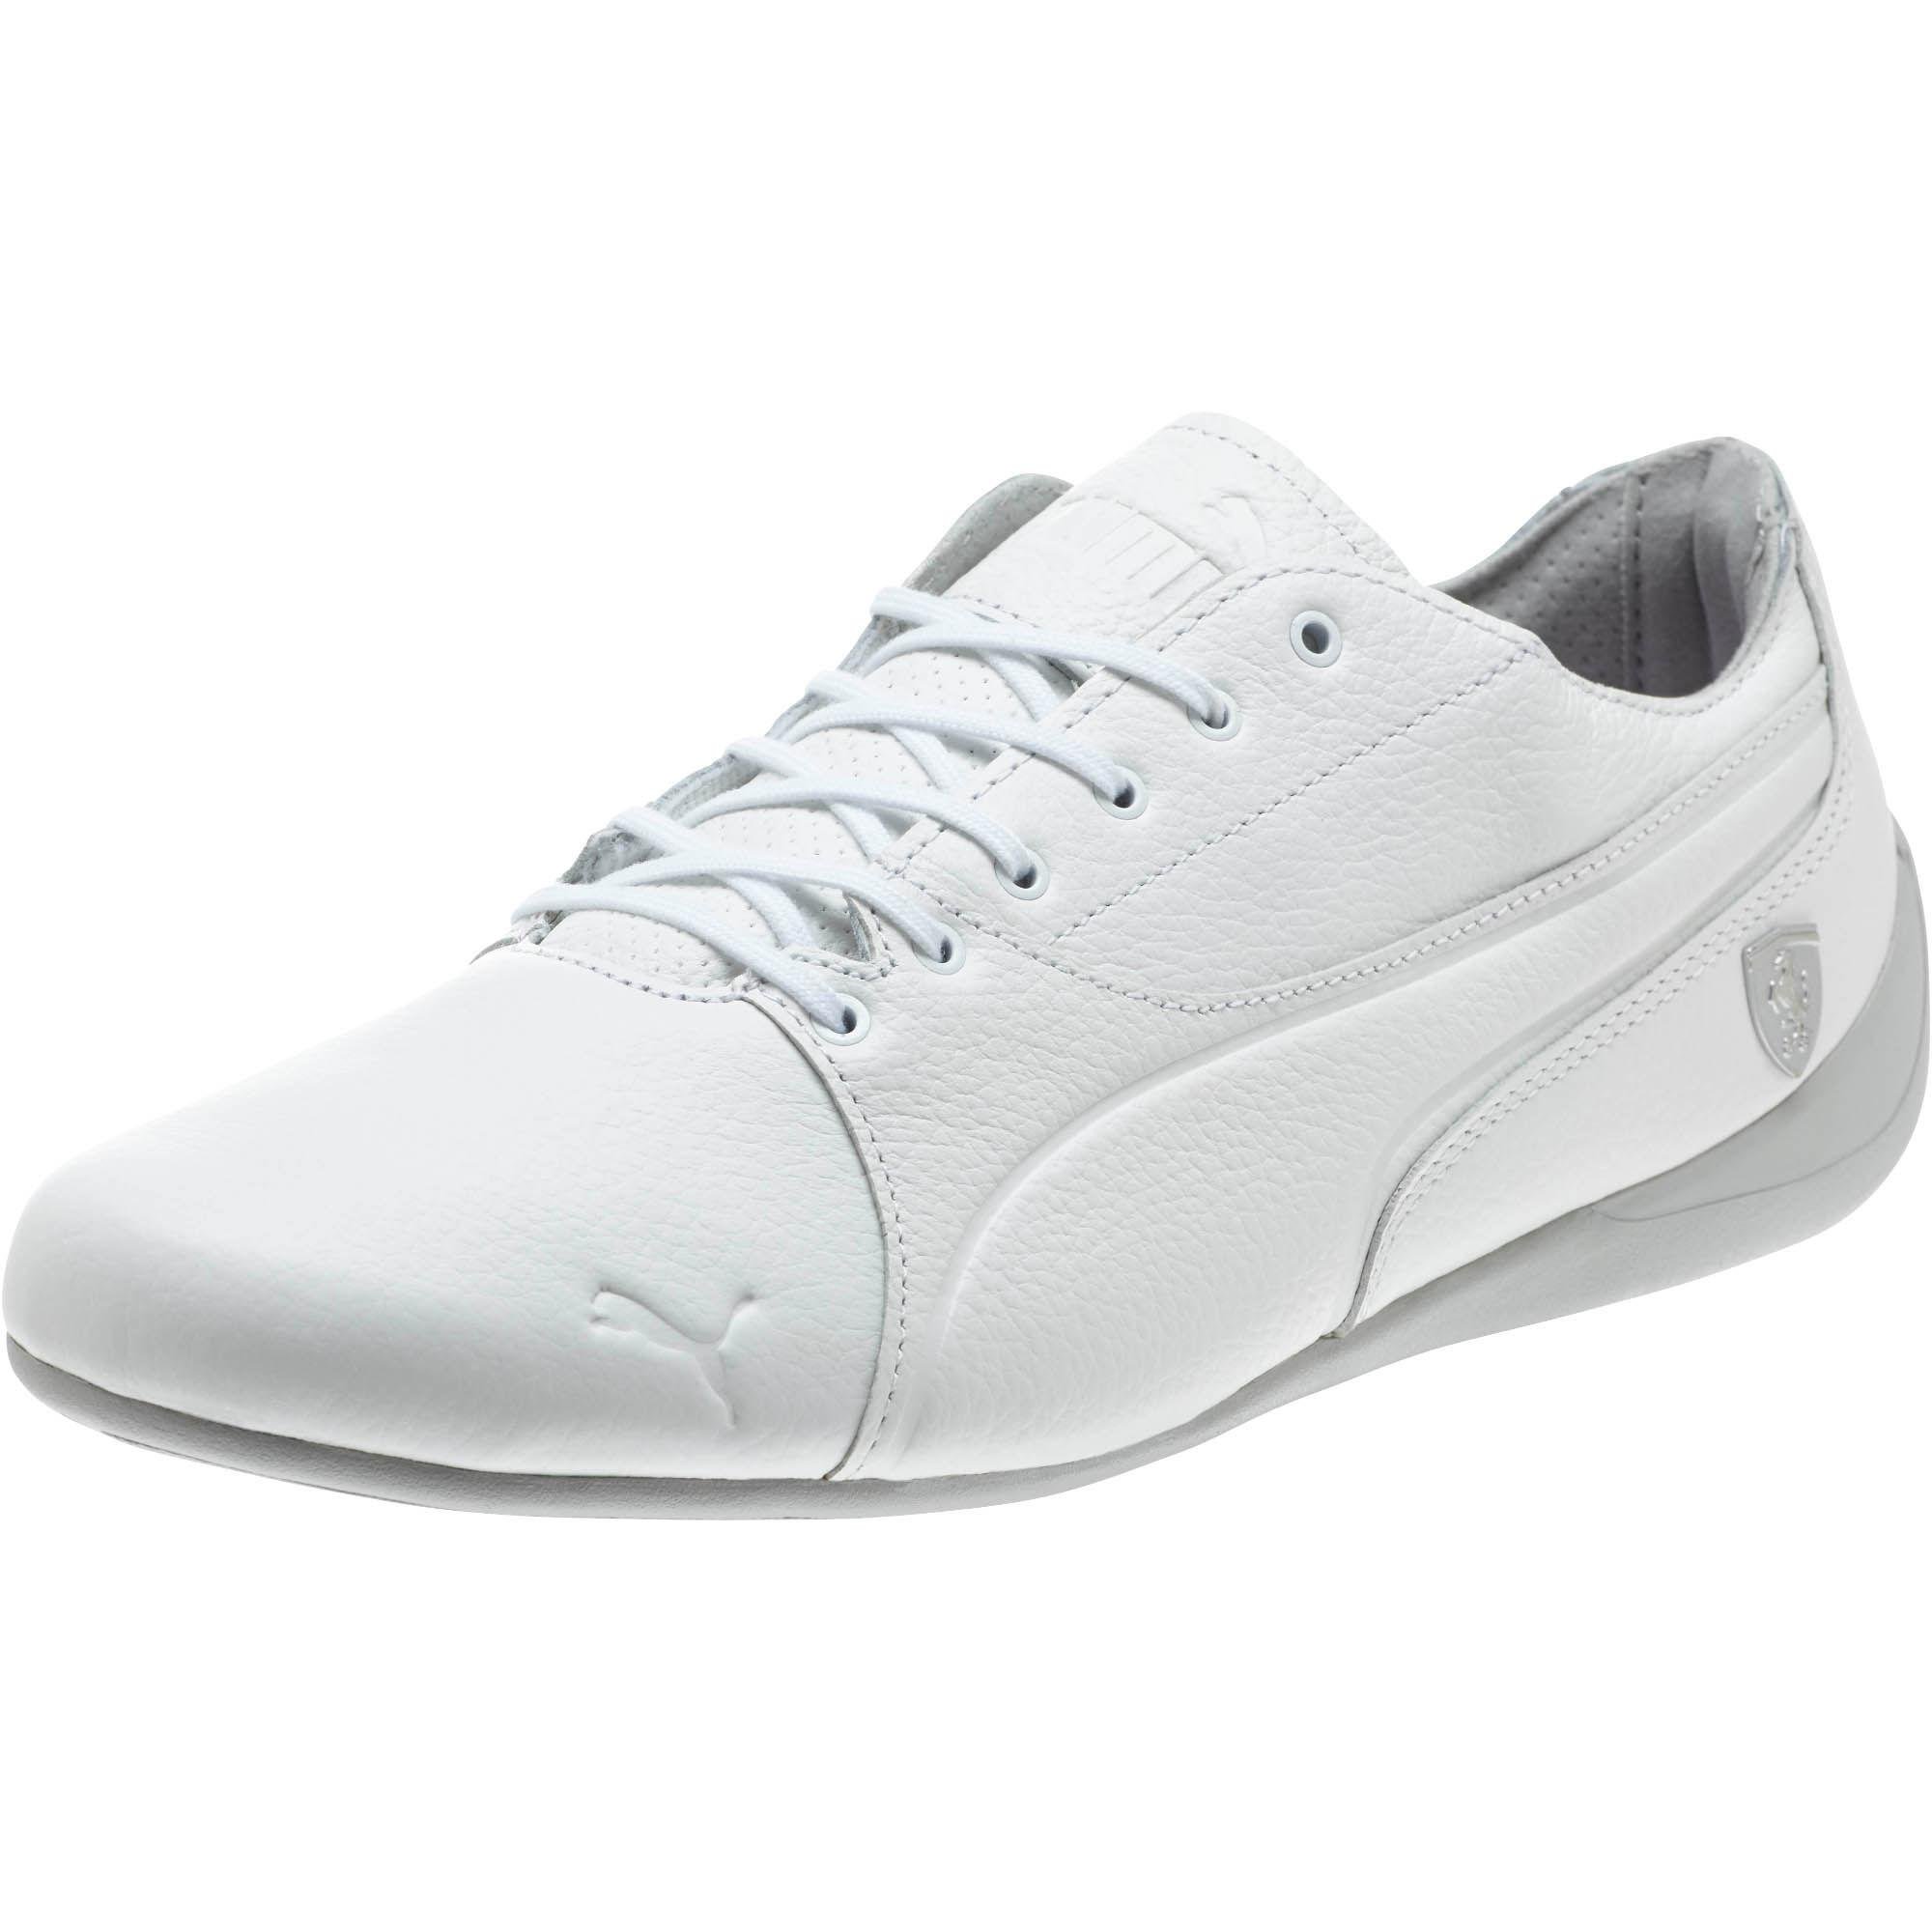 puma shoes ferrari white